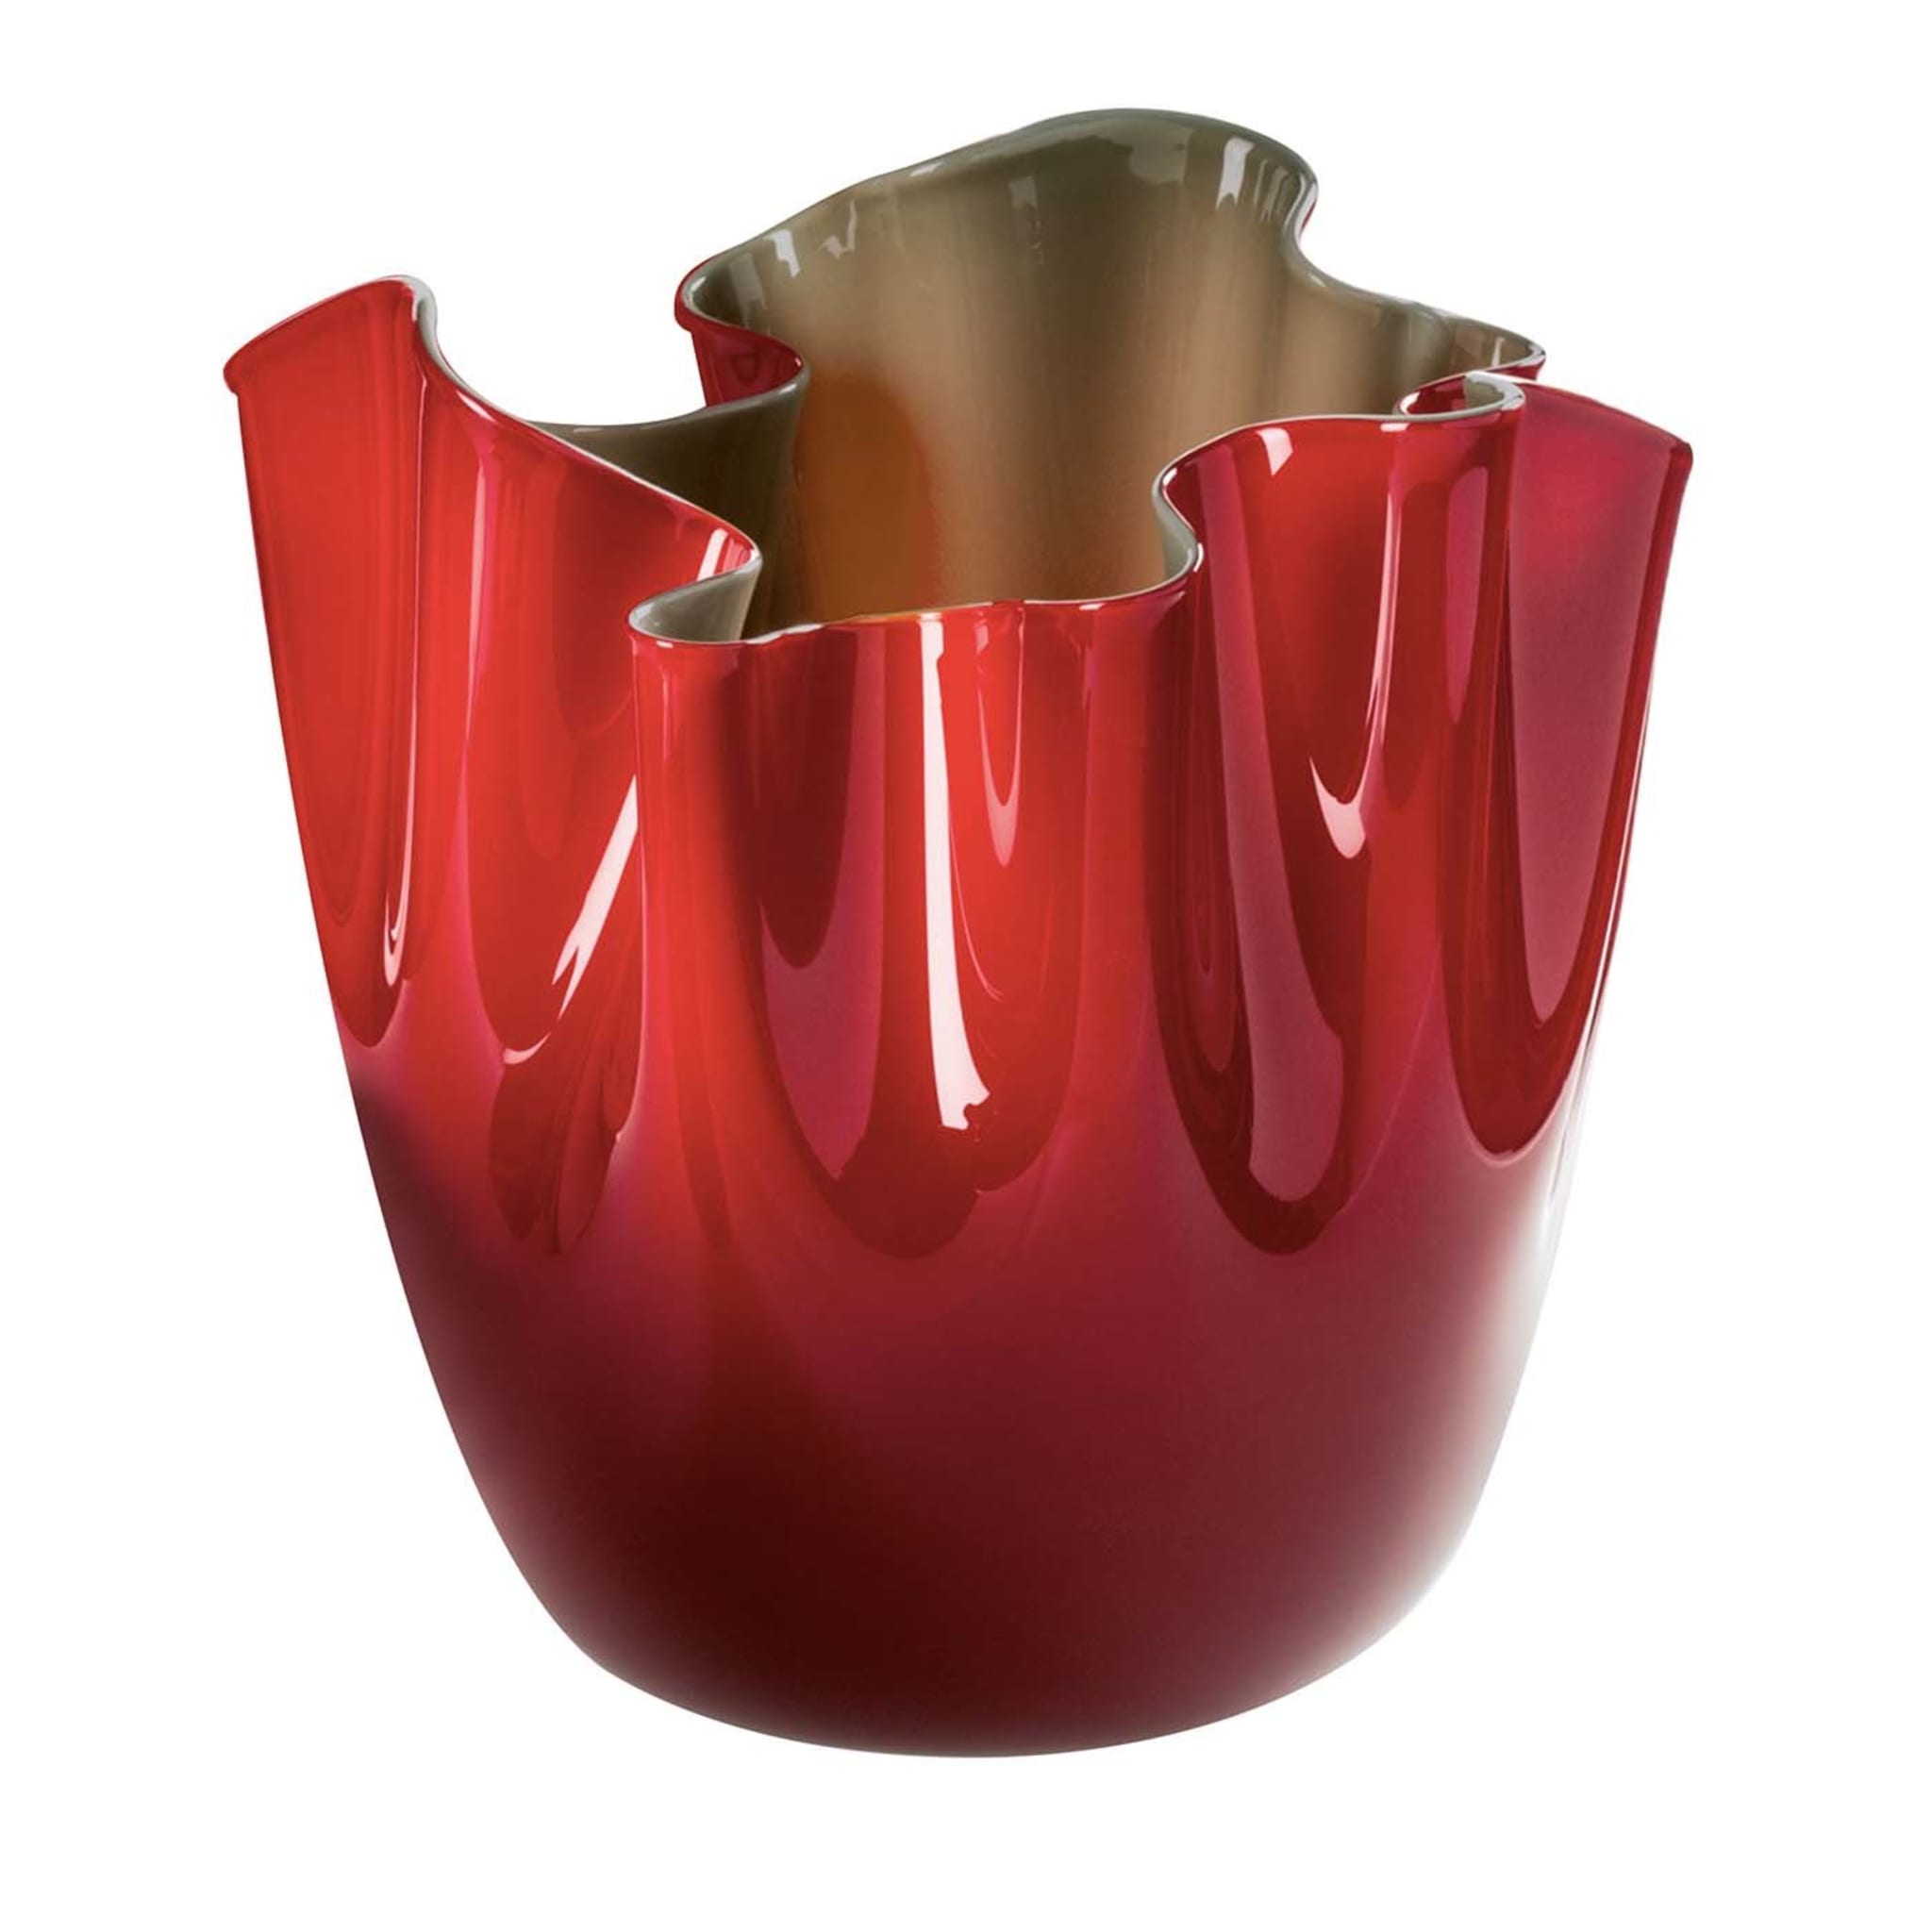 Fazzoletto Opalini Red Vase by Fulvio Bianconi # 1 - Main view